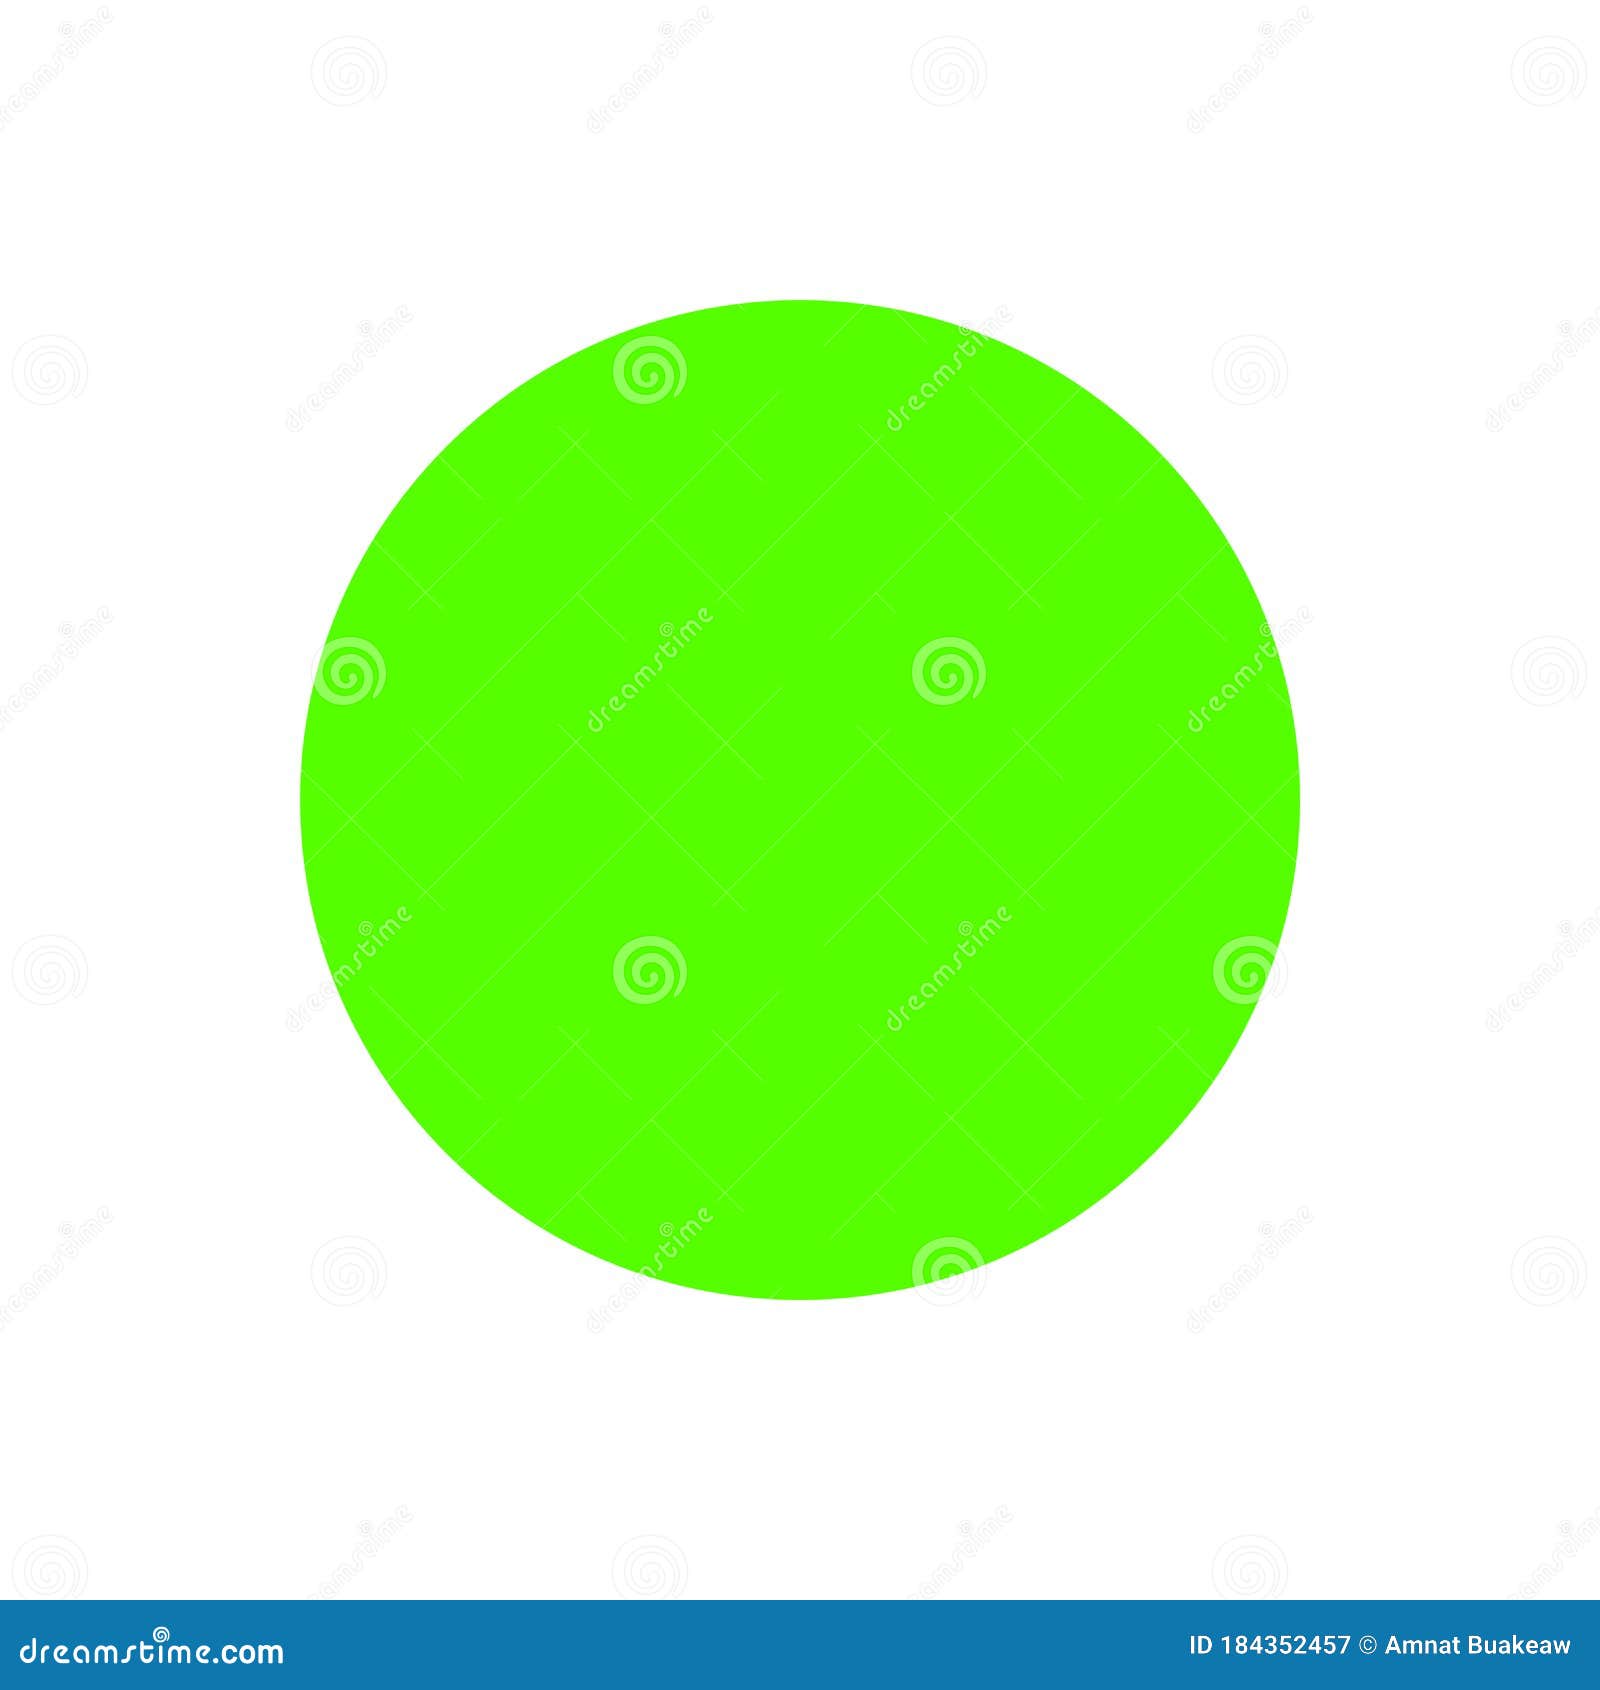 Circle Green Bright Simple - một thiết kế vòng tròn đơn giản nhưng vô cùng tinh tế và hiện đại. Với gam màu xanh tươi sáng, sẽ mang lại cảm giác thông thoáng và tươi mới cho không gian của bạn. Đừng bỏ lỡ cơ hội để khám phá hình ảnh vòng tròn xanh này ngay bây giờ!